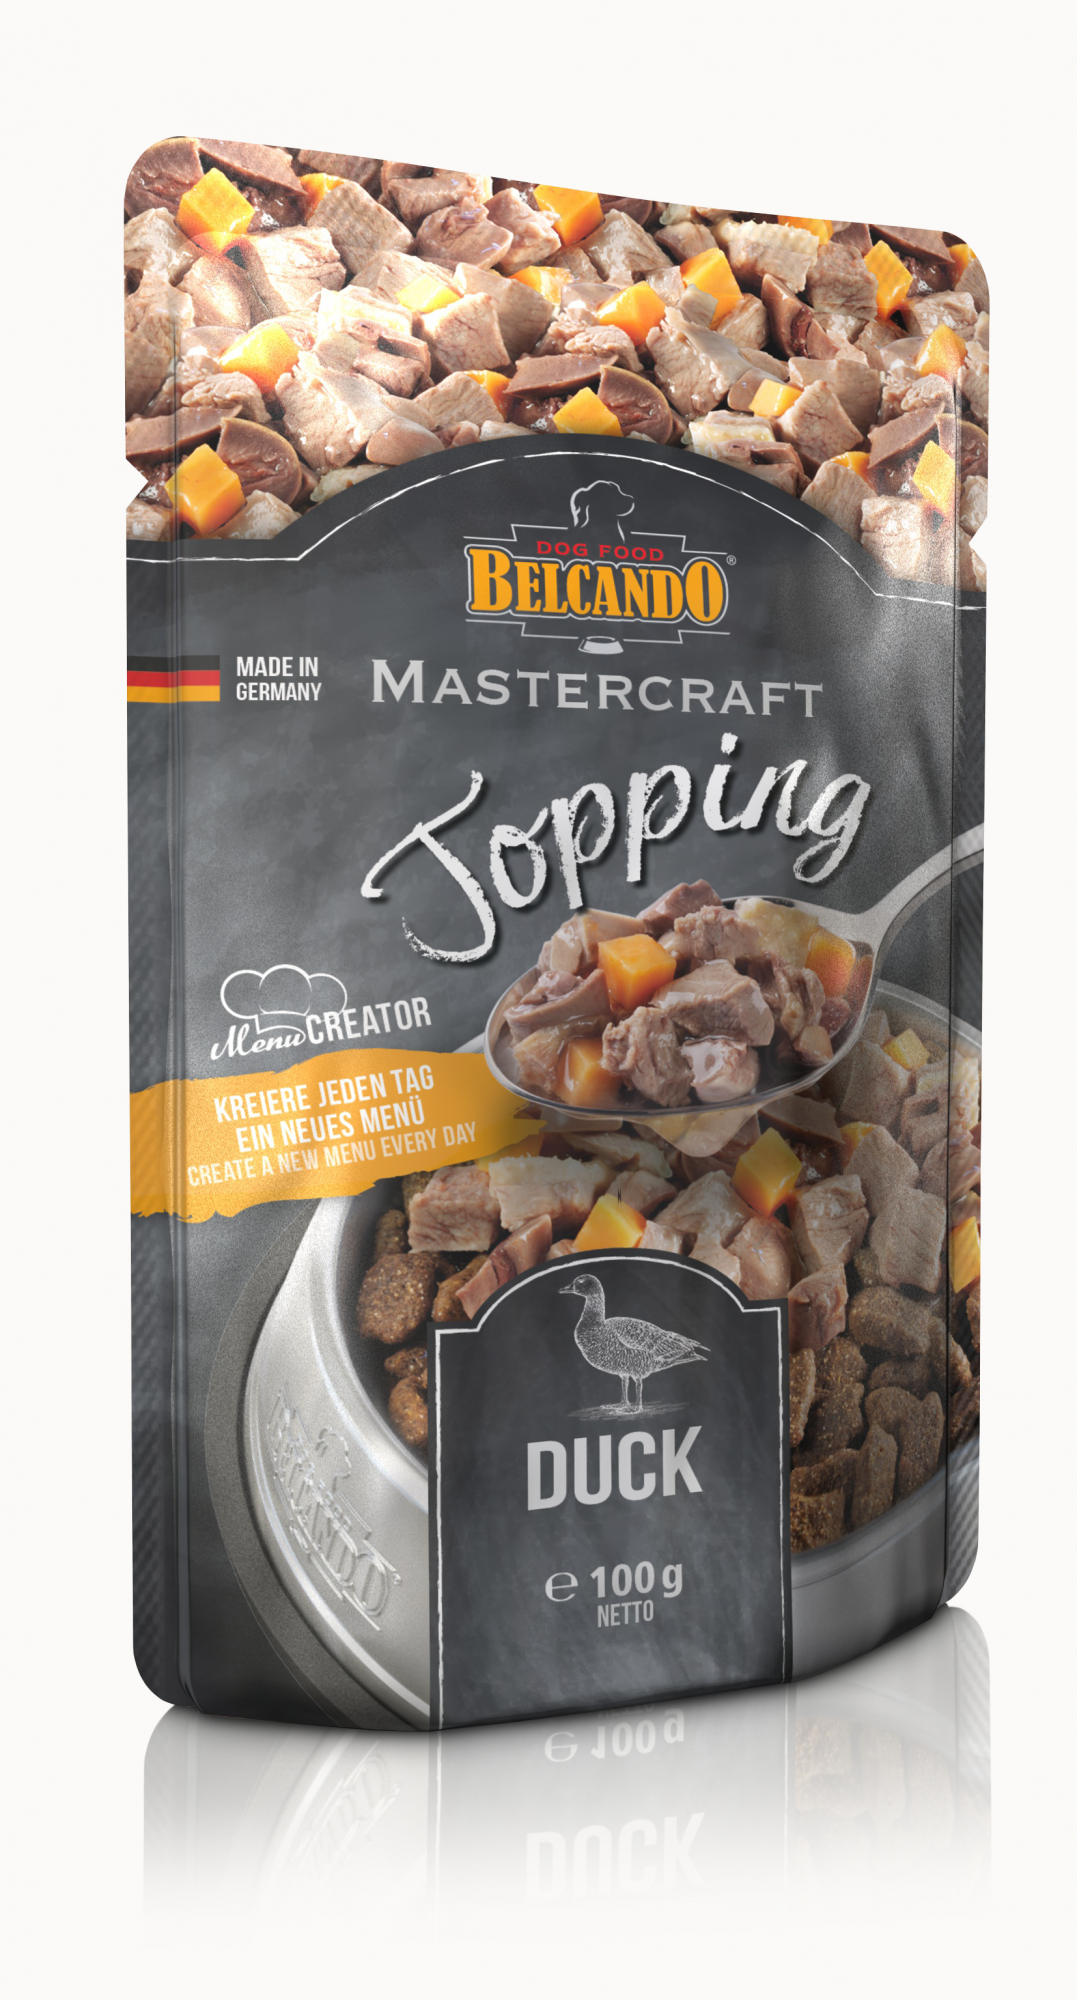 BELCANDO Mastercraft Topping mit Ente für Hunde